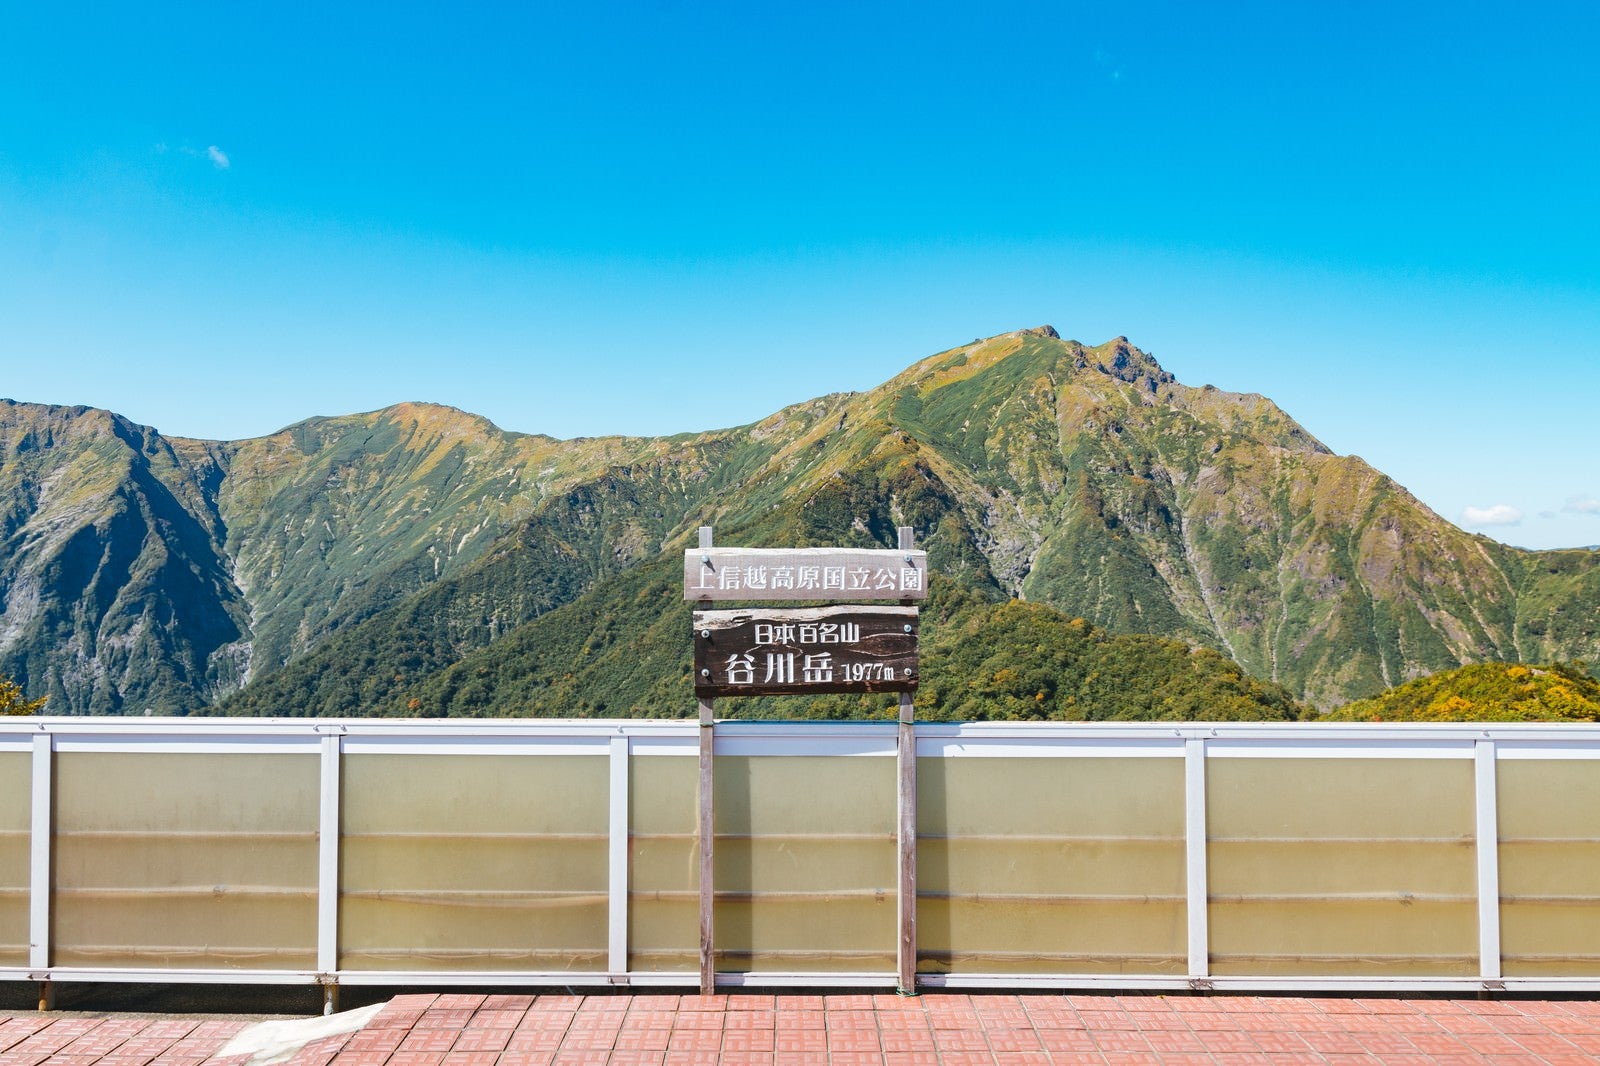 「谷川岳 1977m の看板」の写真